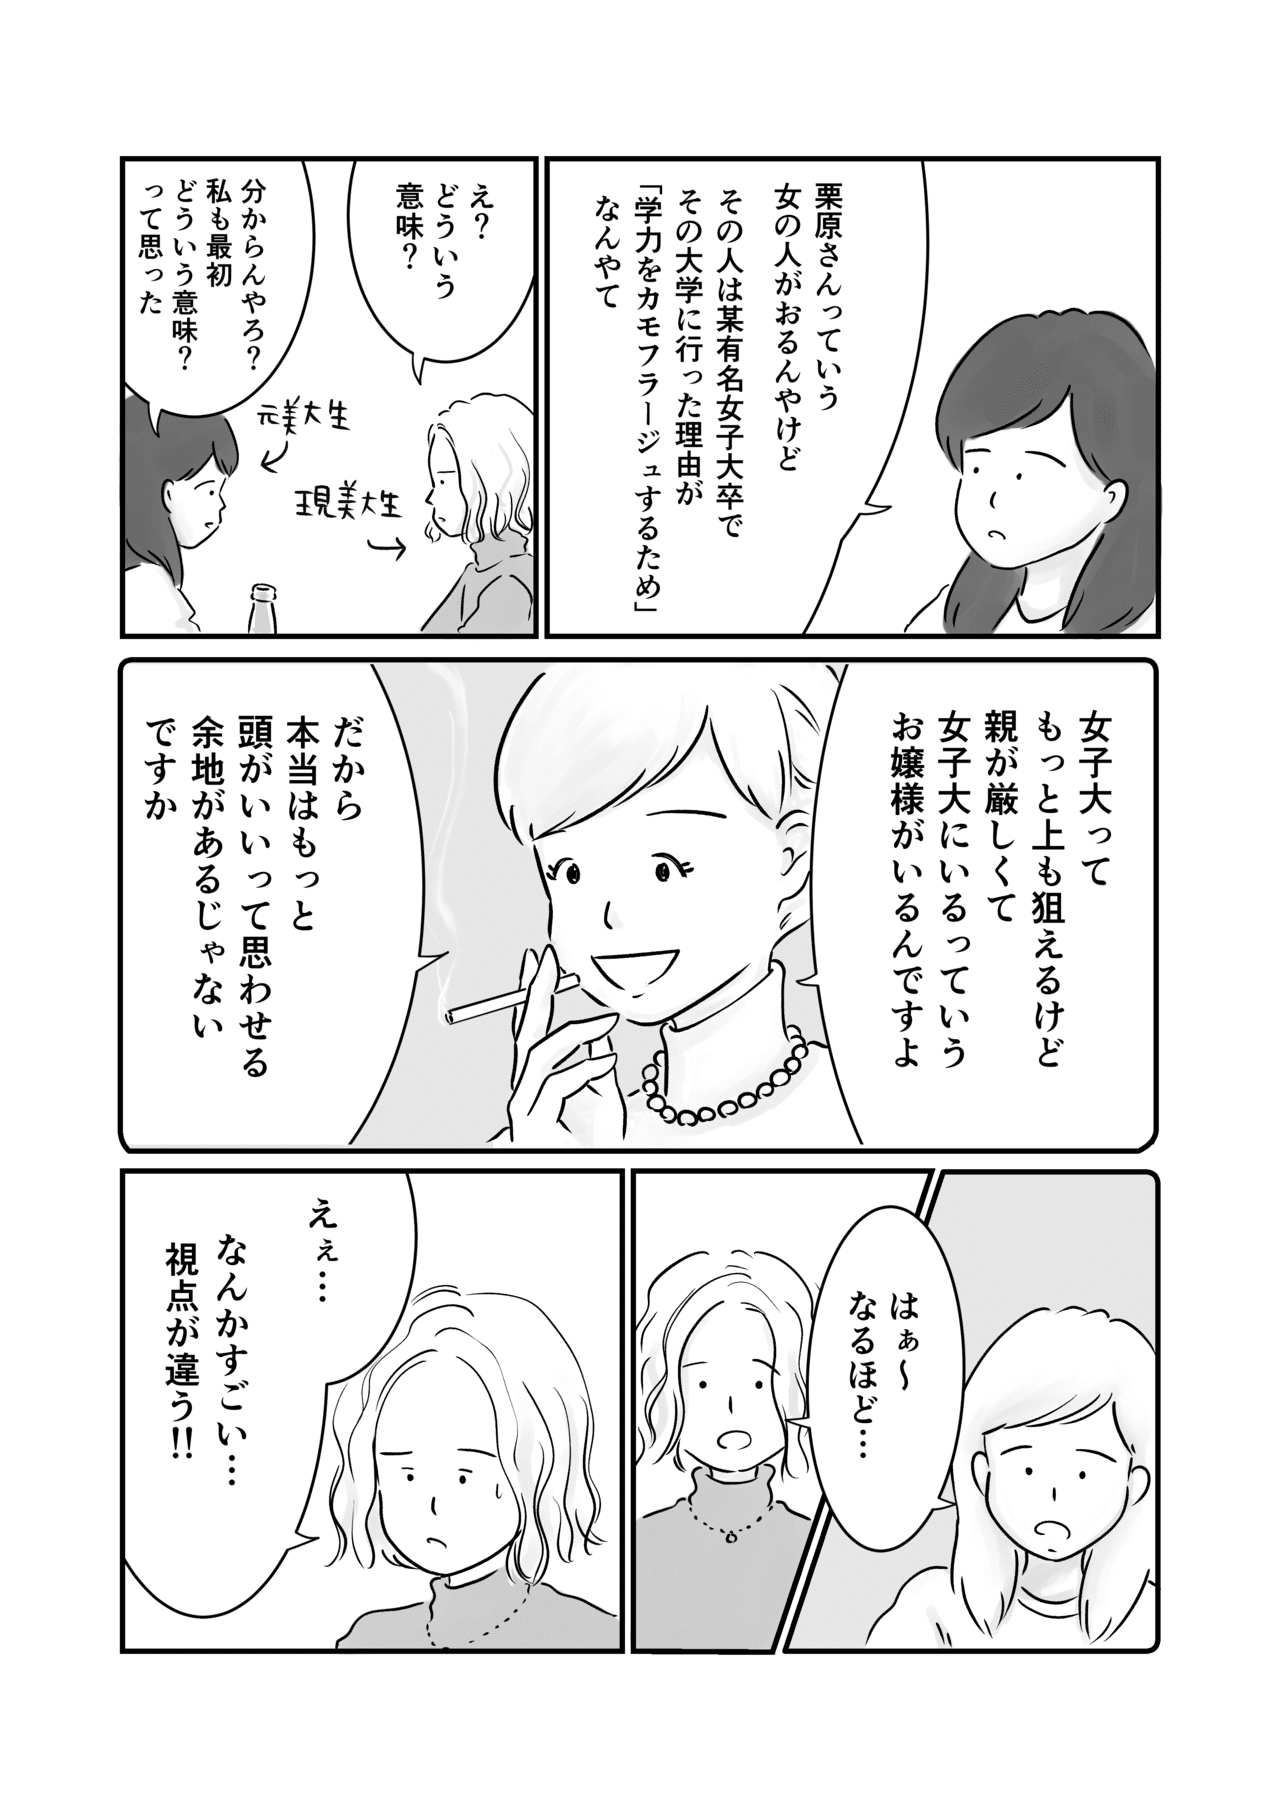 コミック5_出力_002